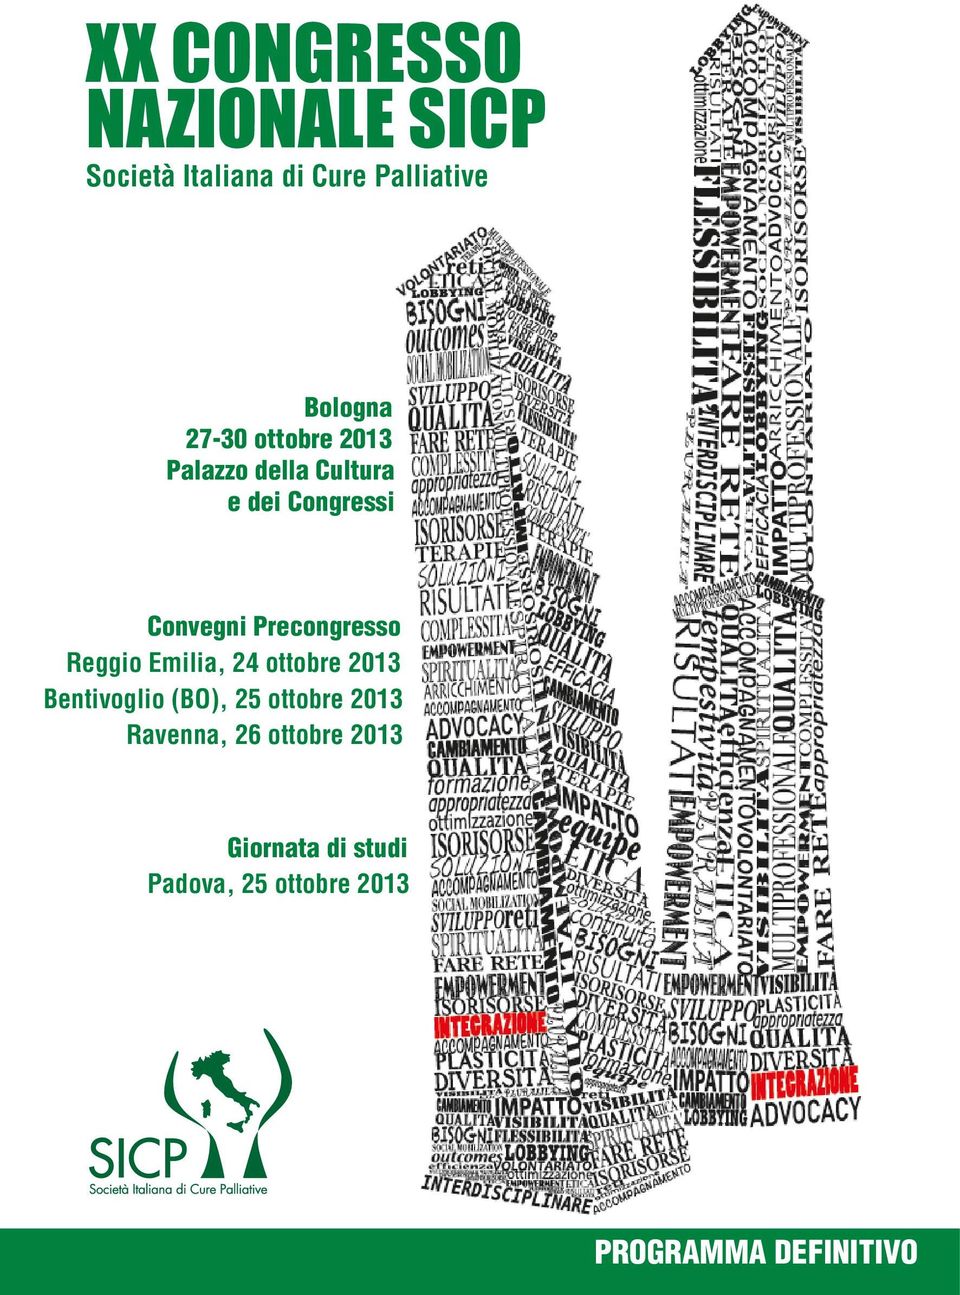 Precongresso Reggio Emilia, 24 ottobre 2013 Bentivoglio (BO), 25 ottobre